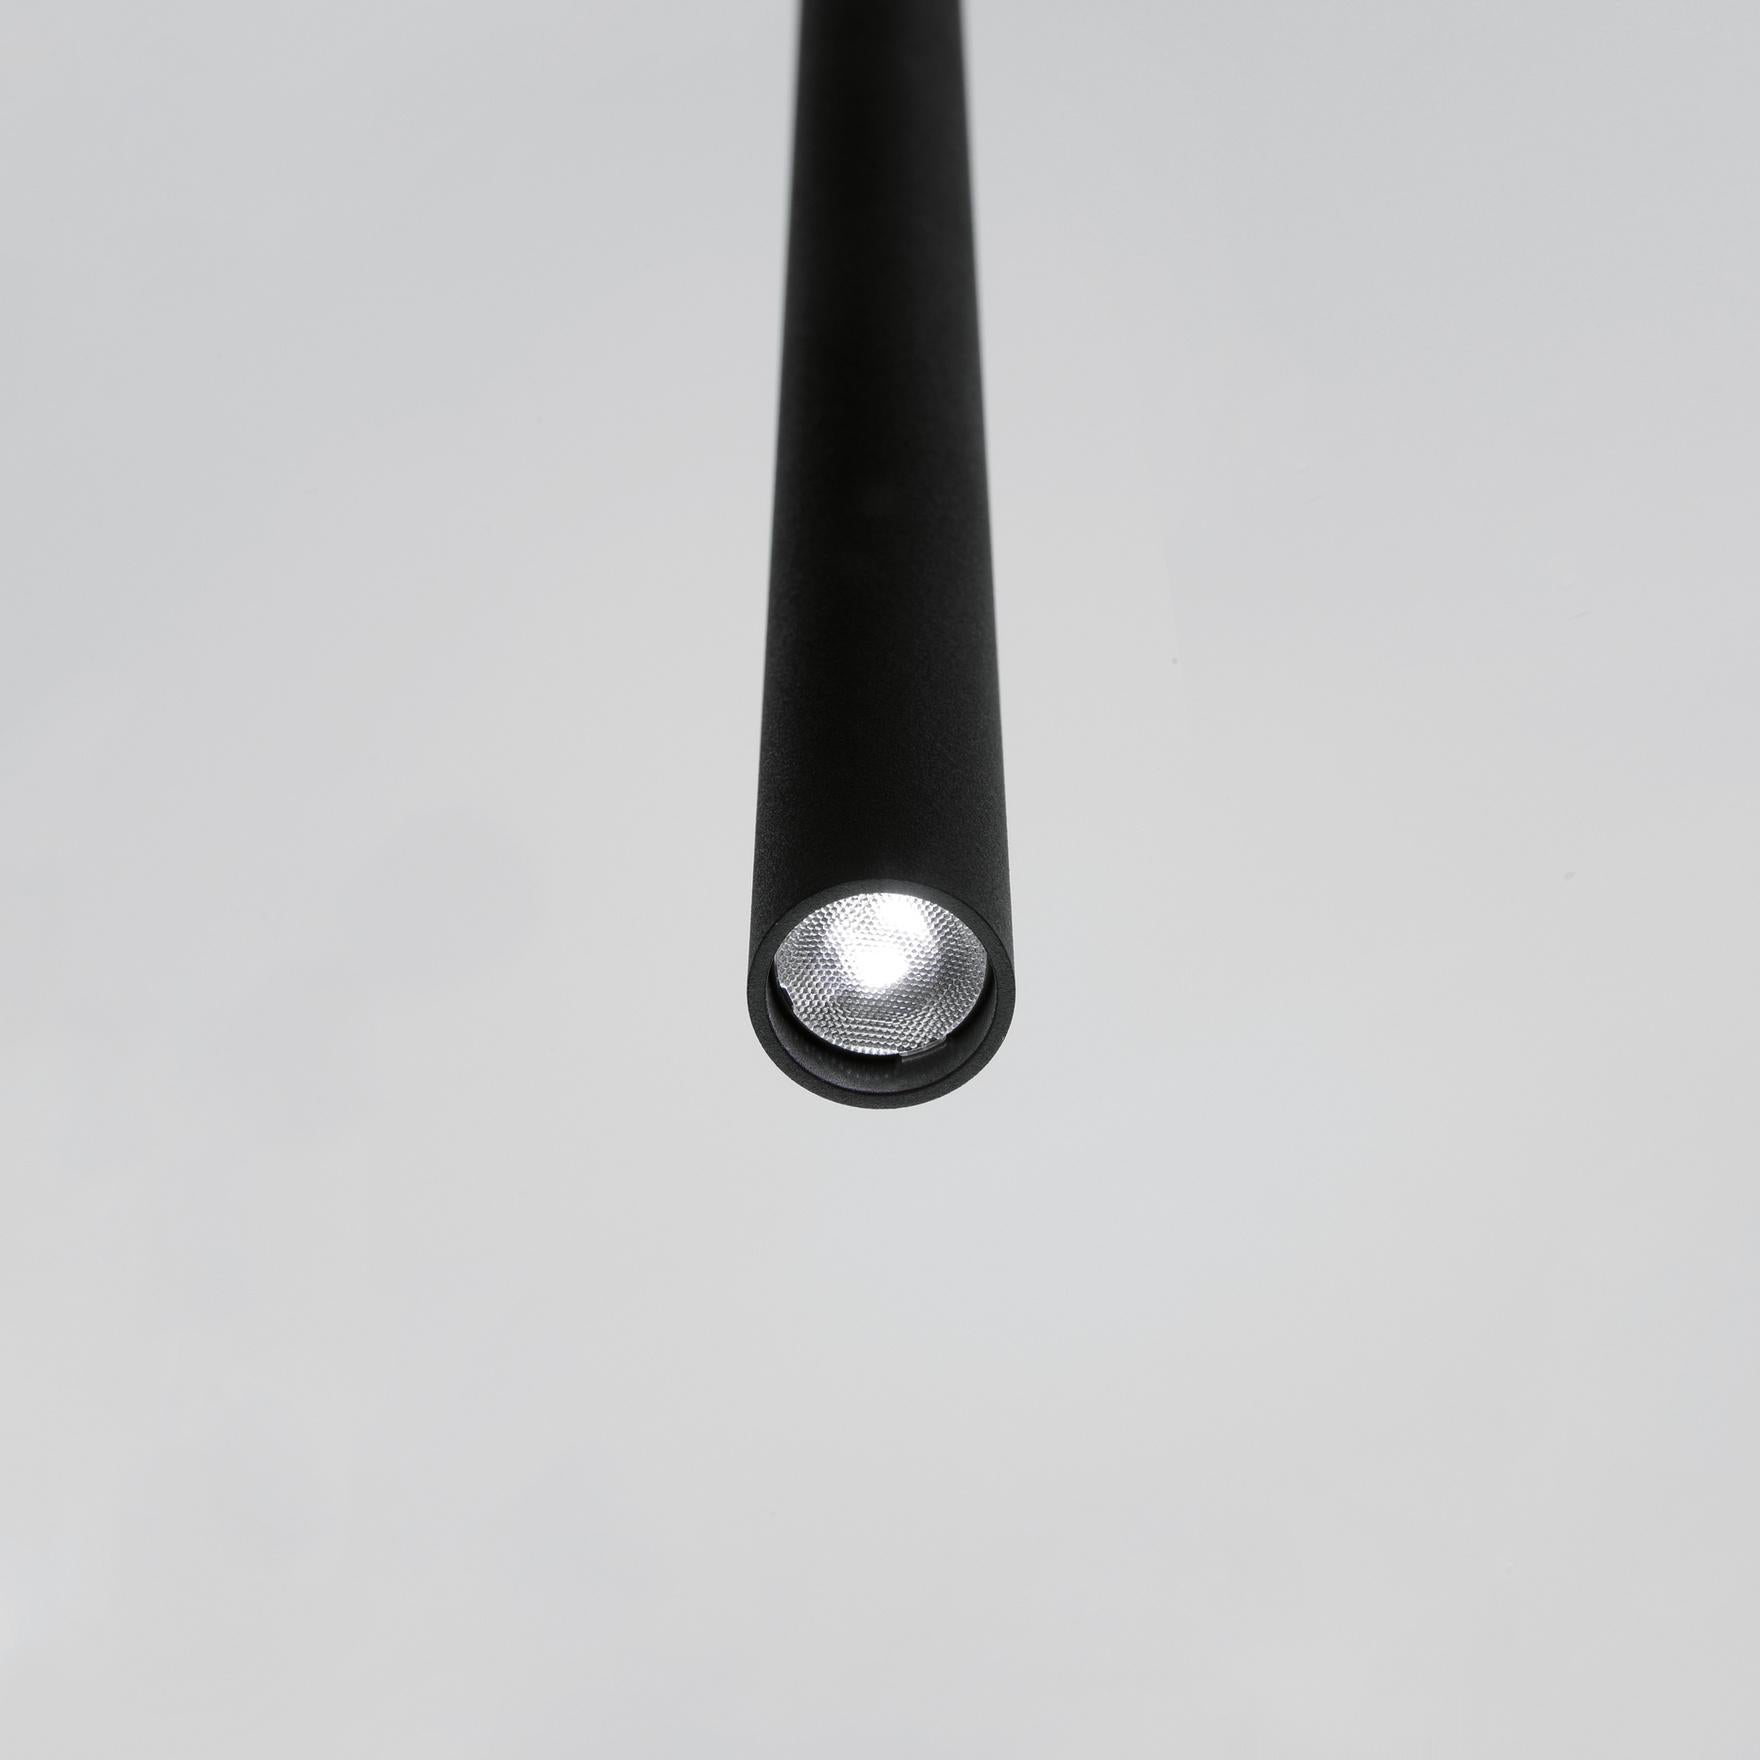 Davide Groppi MISS pendant lamp 1-10V in total black  by Omar Carraglia  For Sale 5